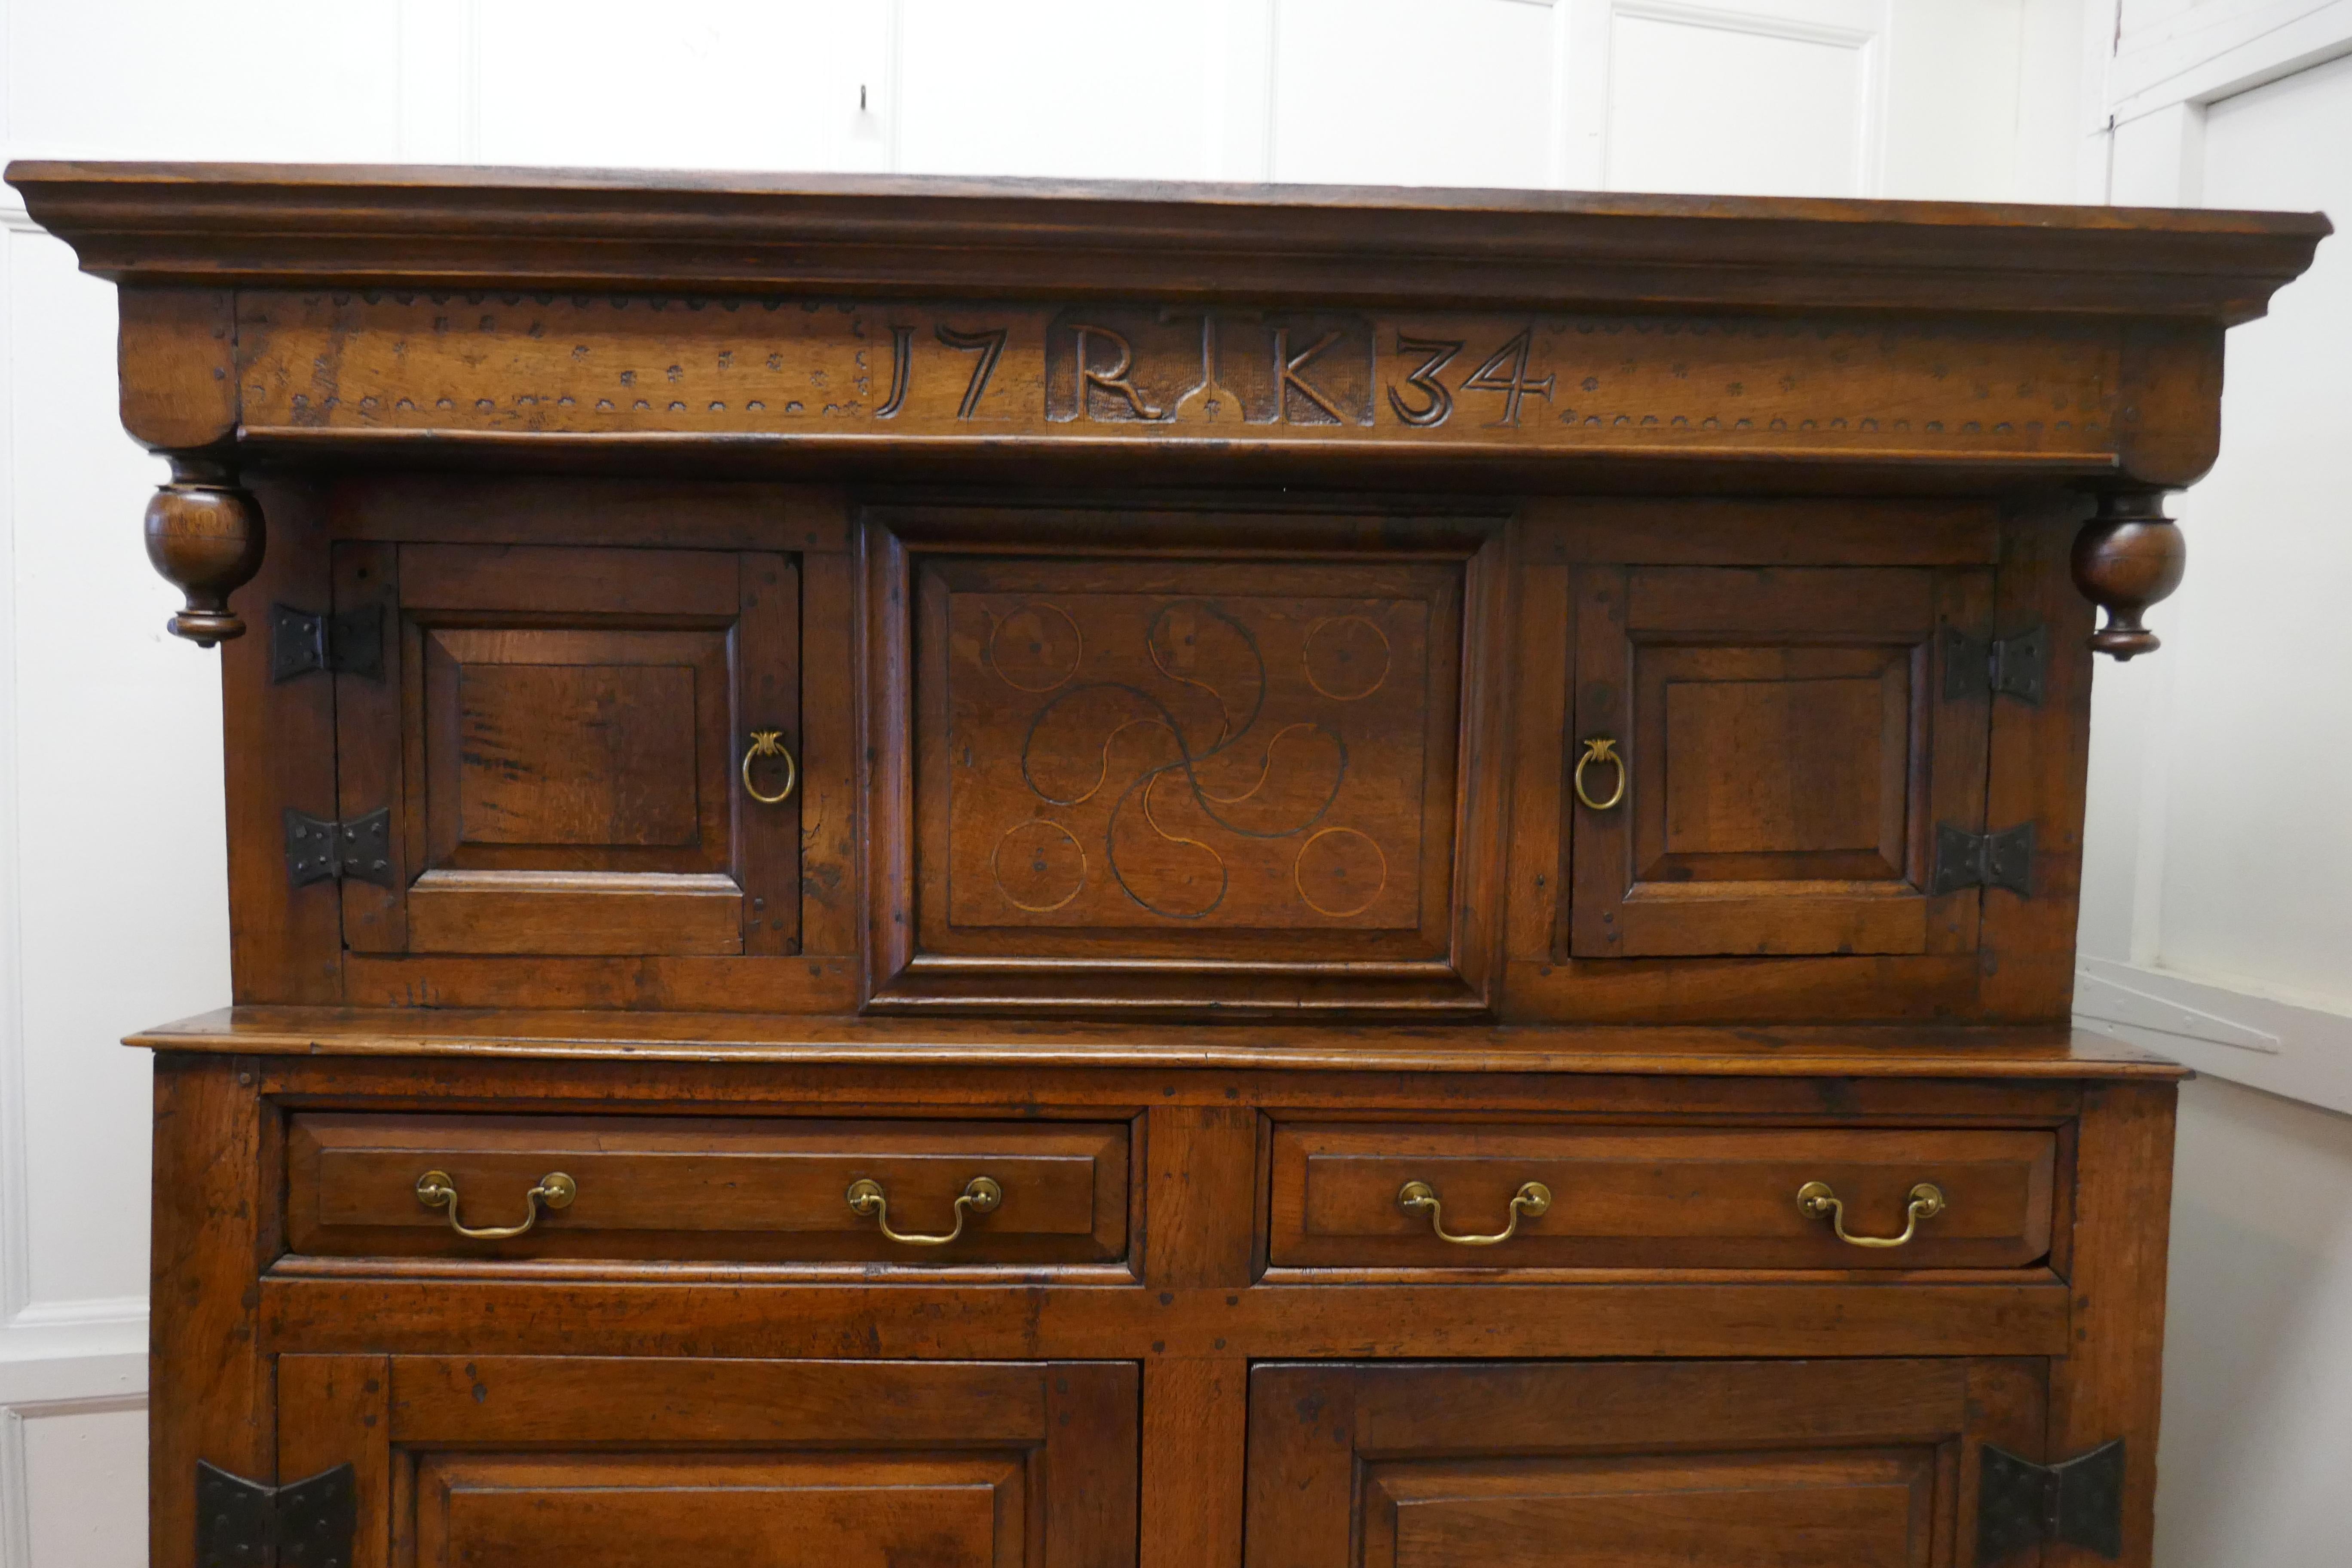 armoire de cour celtique en chêne sculpté du 18e siècle,

Cette armoire ancienne et spacieuse est fabriquée en chêne massif et il va sans dire qu'elle est très lourde. Heureusement, elle se présente en deux parties pour le transport
Il s'agit